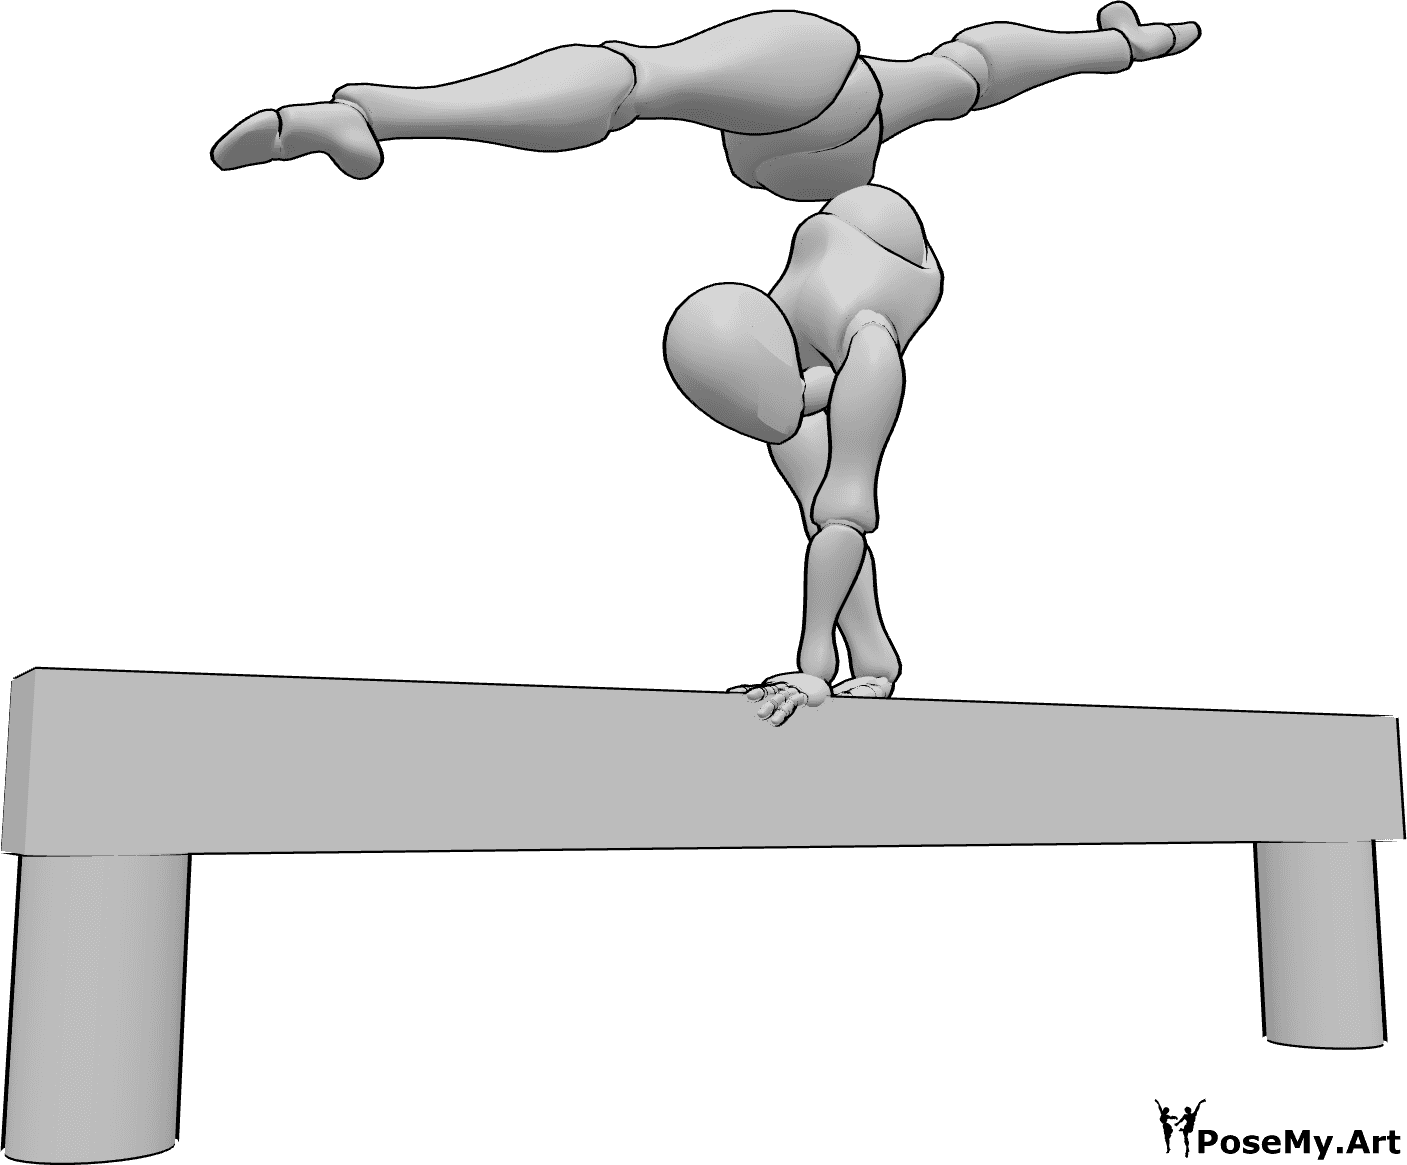 Referência de poses- Pose de salto com as mãos - A mulher faz uma parada de mão no salto e um front split no ar